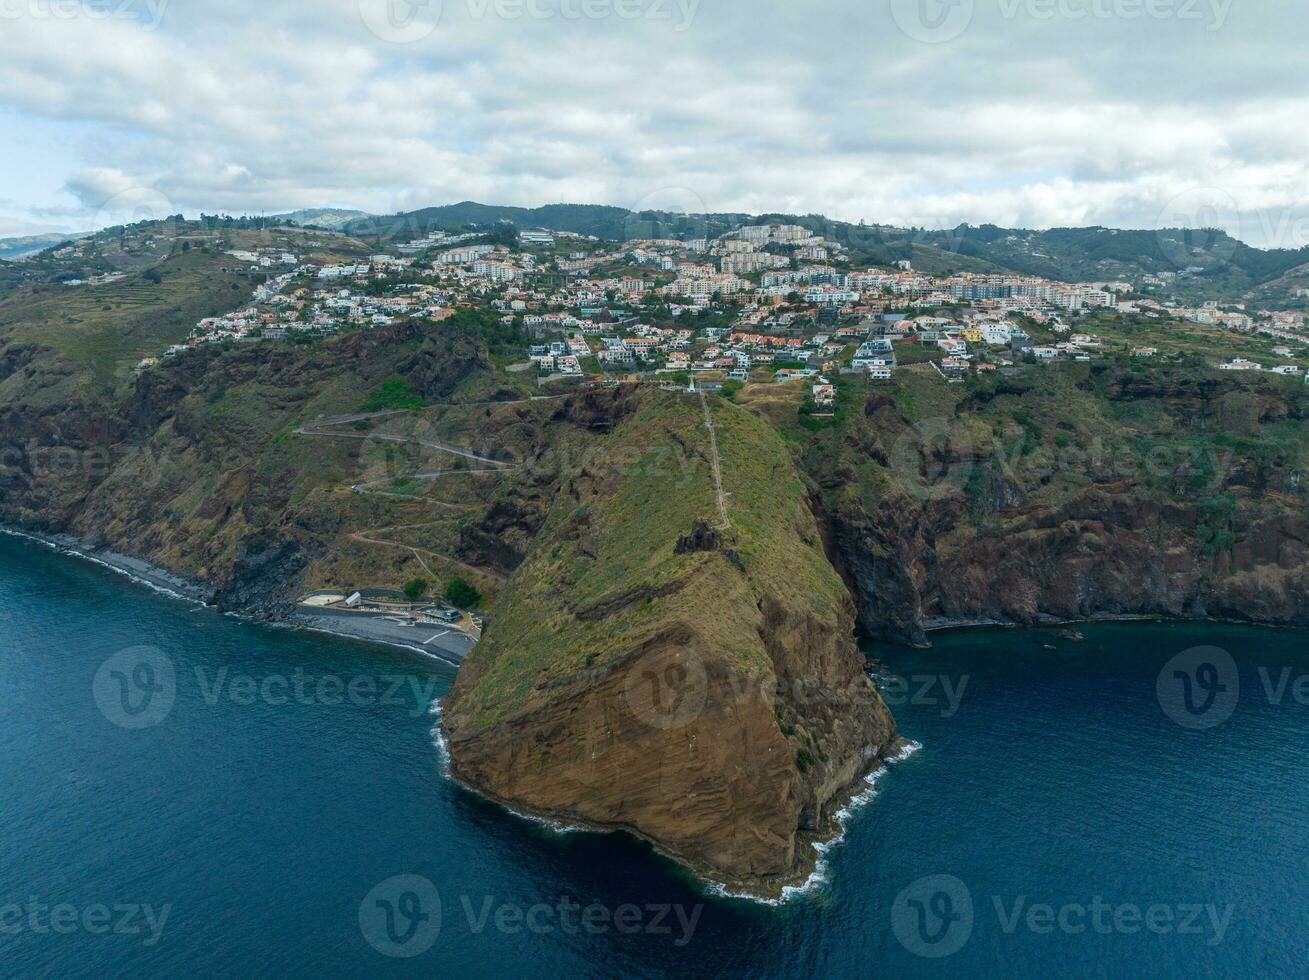 Jezus Christus standbeeld van Christus de koning - Madeira, Portugal foto